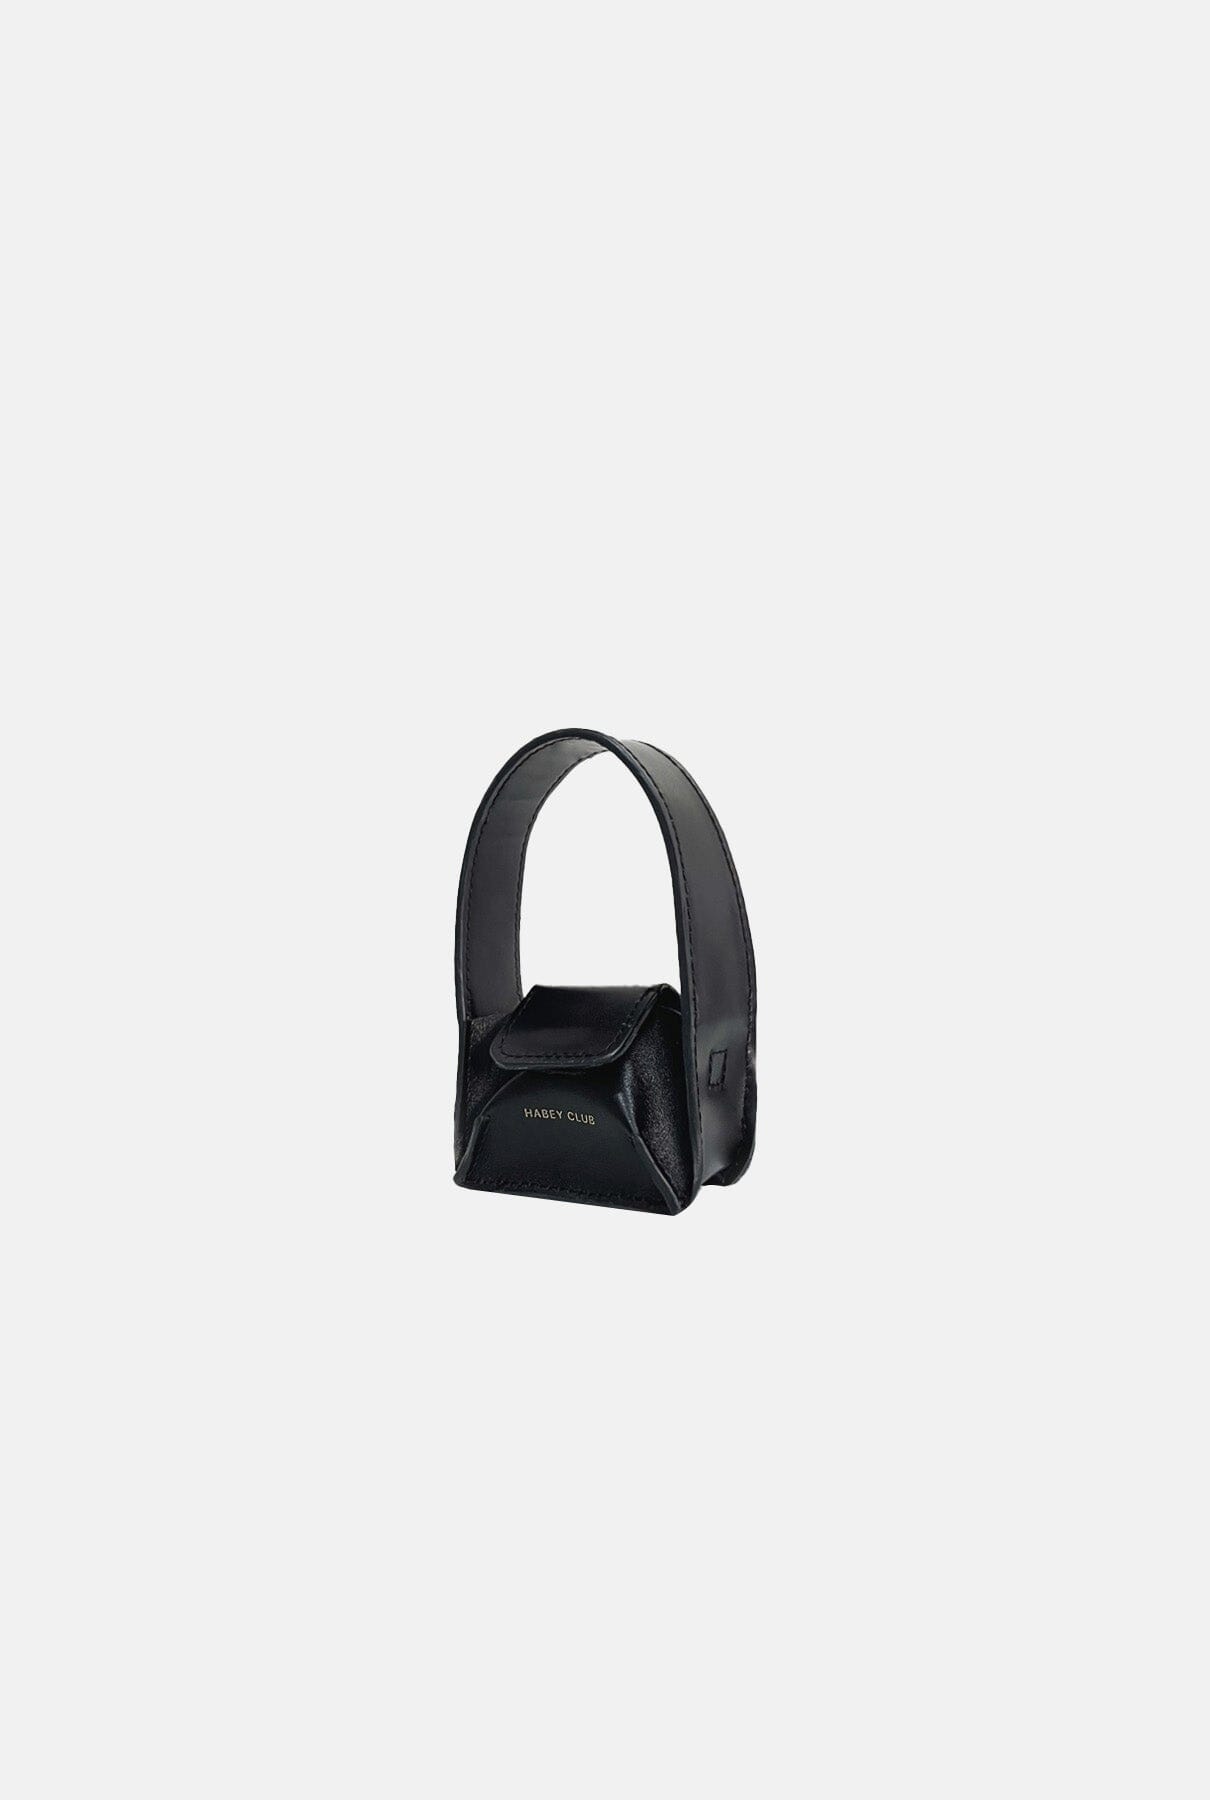 Black microbowl bag Mini bags Habey Club 